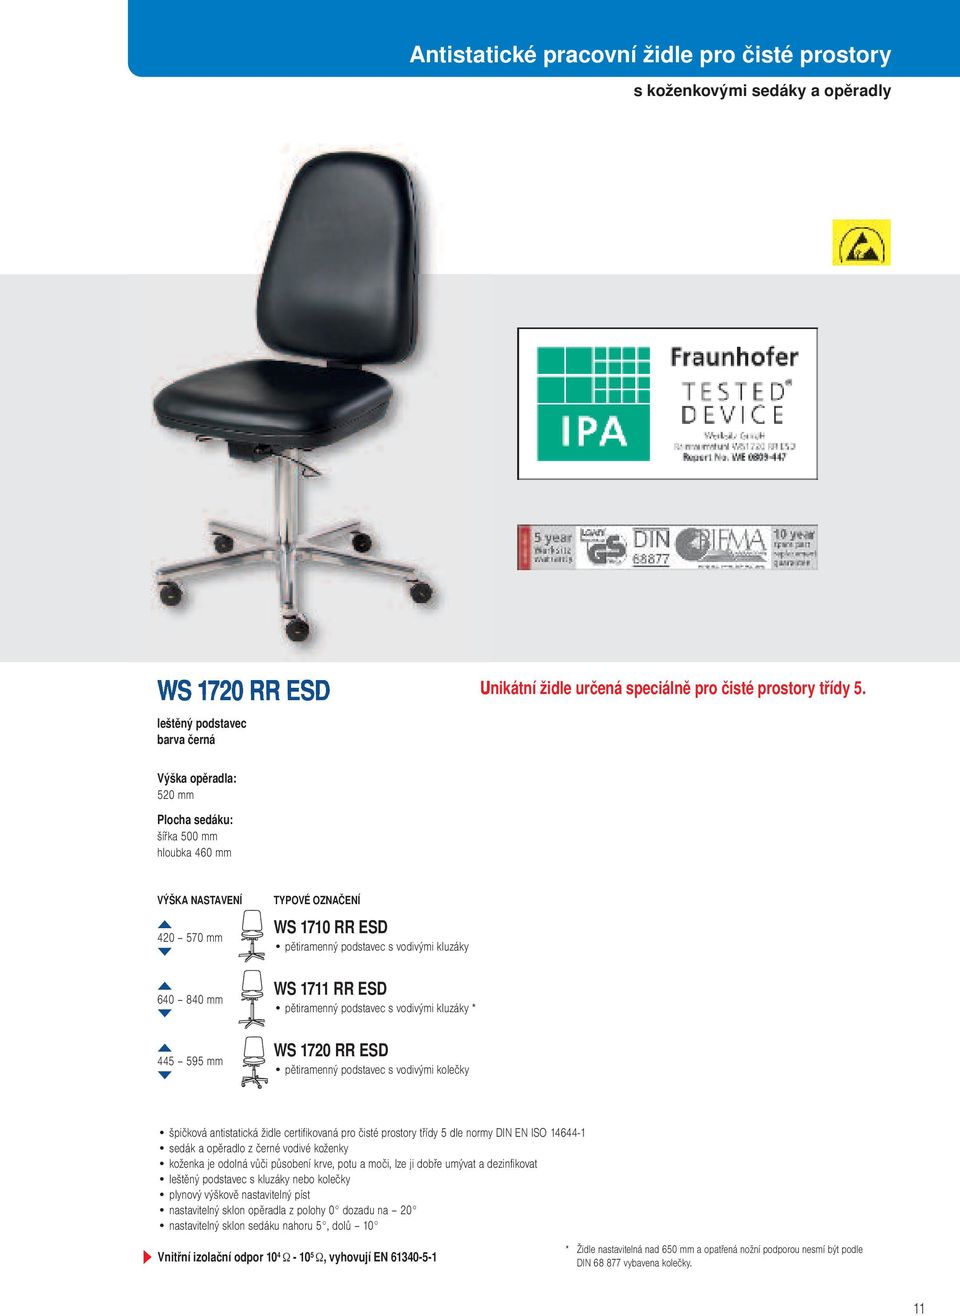 WS 1720 RR ESD pětiramenný podstavec s vodivými kolečky špičková antistatická židle certifikovaná pro čisté prostory třídy 5 dle normy DIN EN ISO 14644-1 sedák a opěradlo z černé vodivé koženky